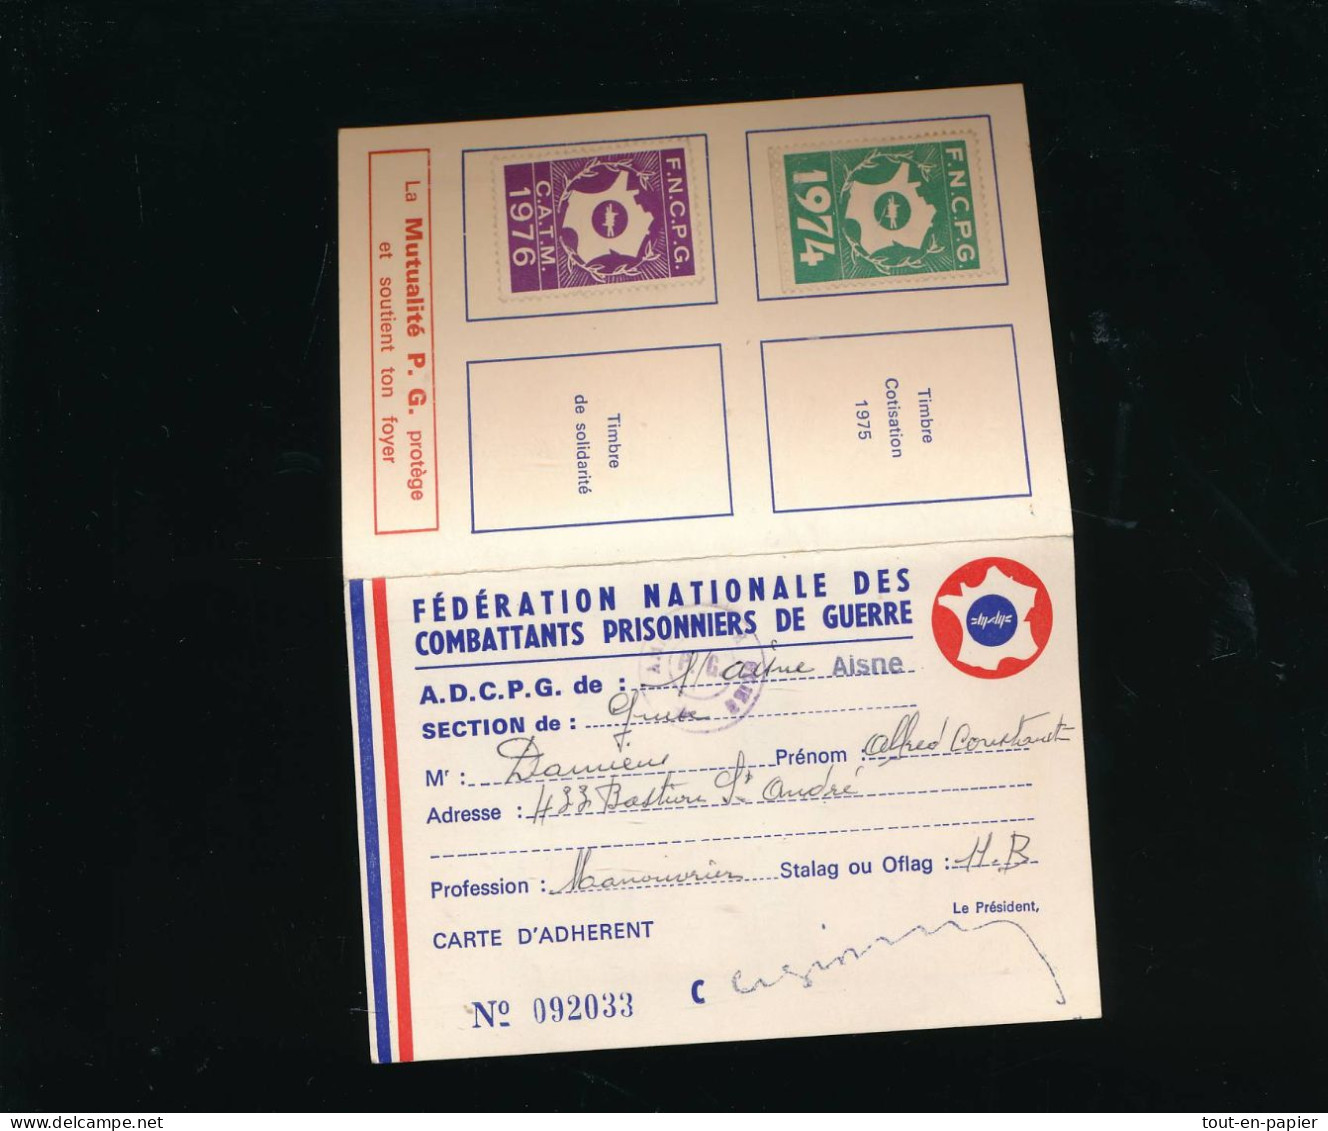 Carte D'adhérent Fédération Nationale Combattants Prisonniers De Guerre Timbres 1966 à 1975 Ancien Stalag Oflag 11B - Covers & Documents